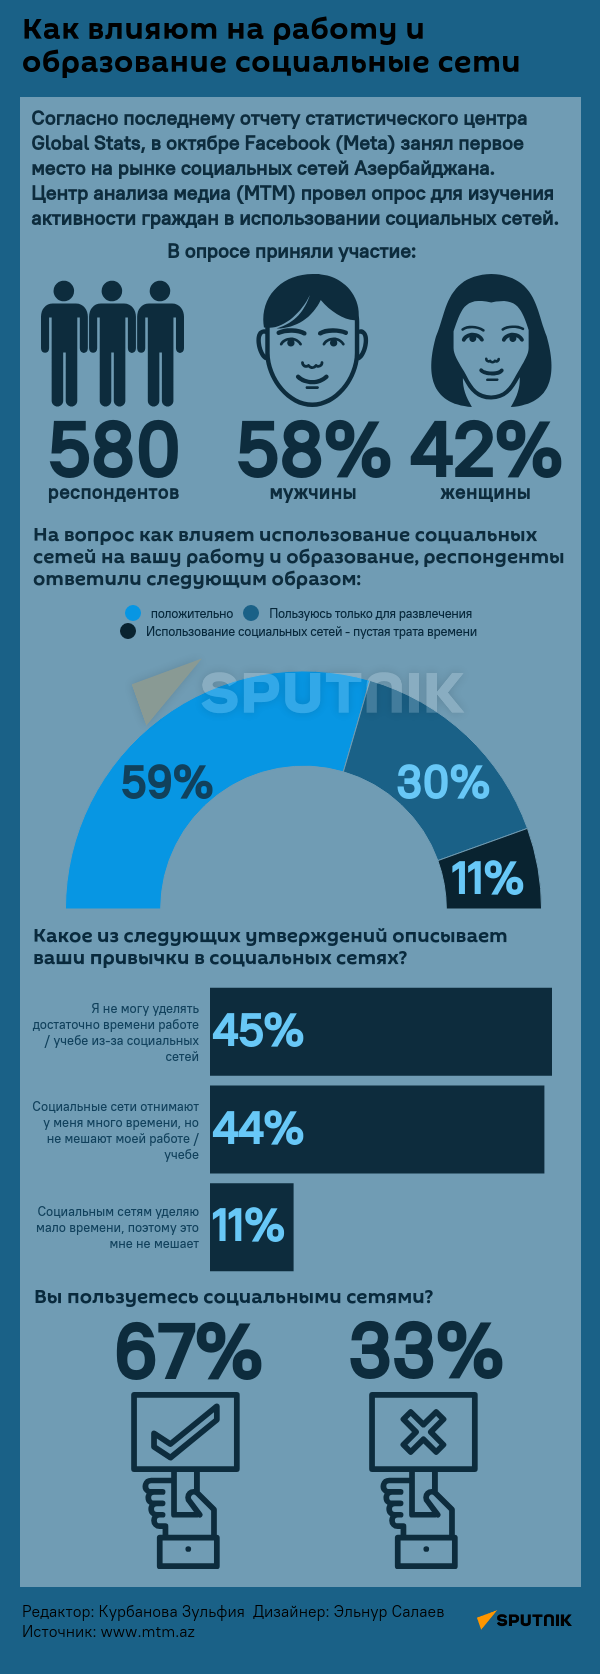 Инфографика: Как влияют на работу и образования соцальные сети - Sputnik Азербайджан